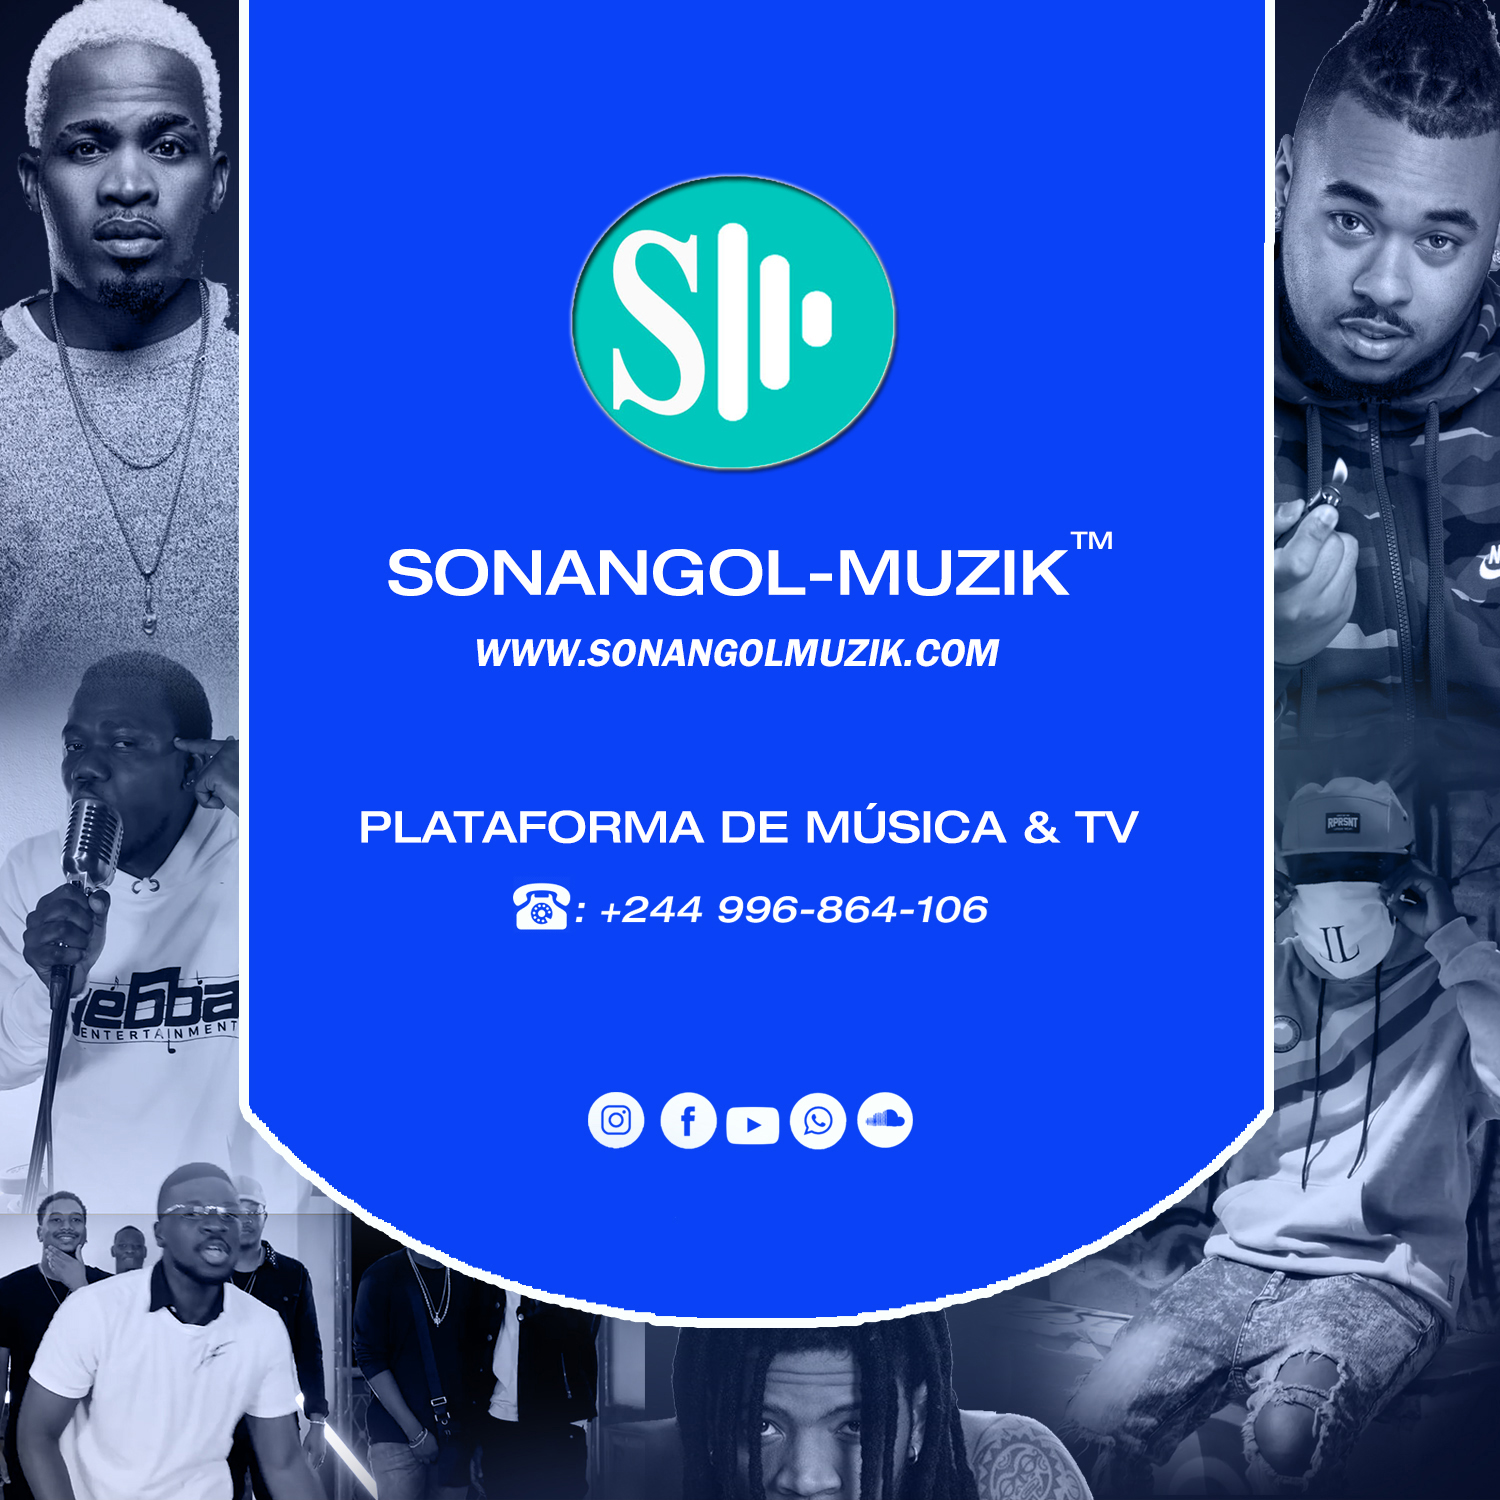 Biography of Sonangol-Muzik